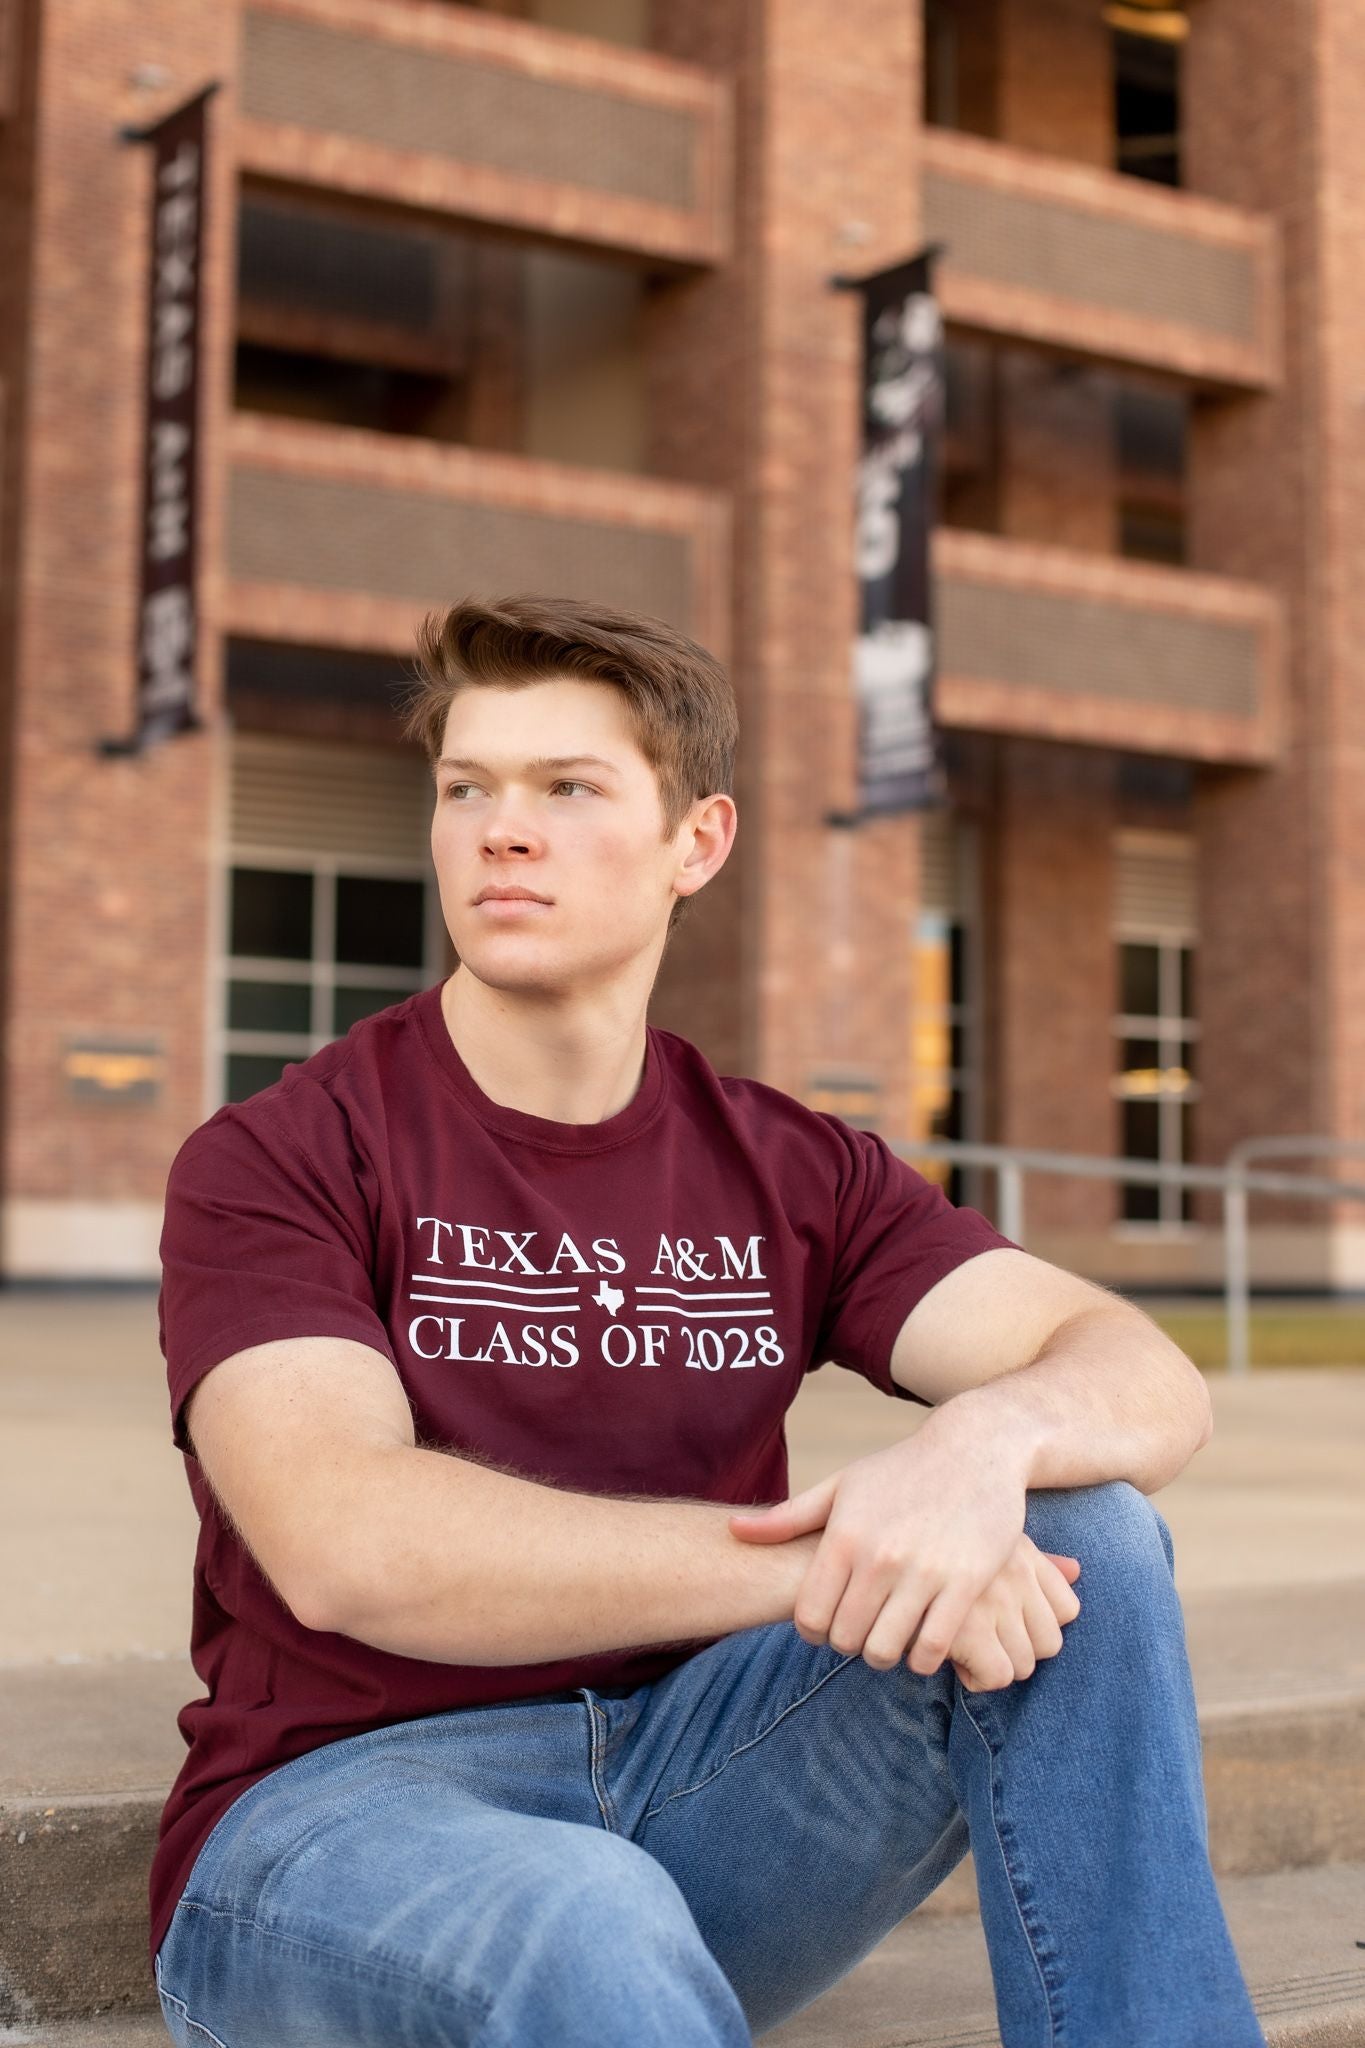 Texas A&M Class of 2028 T-Shirt